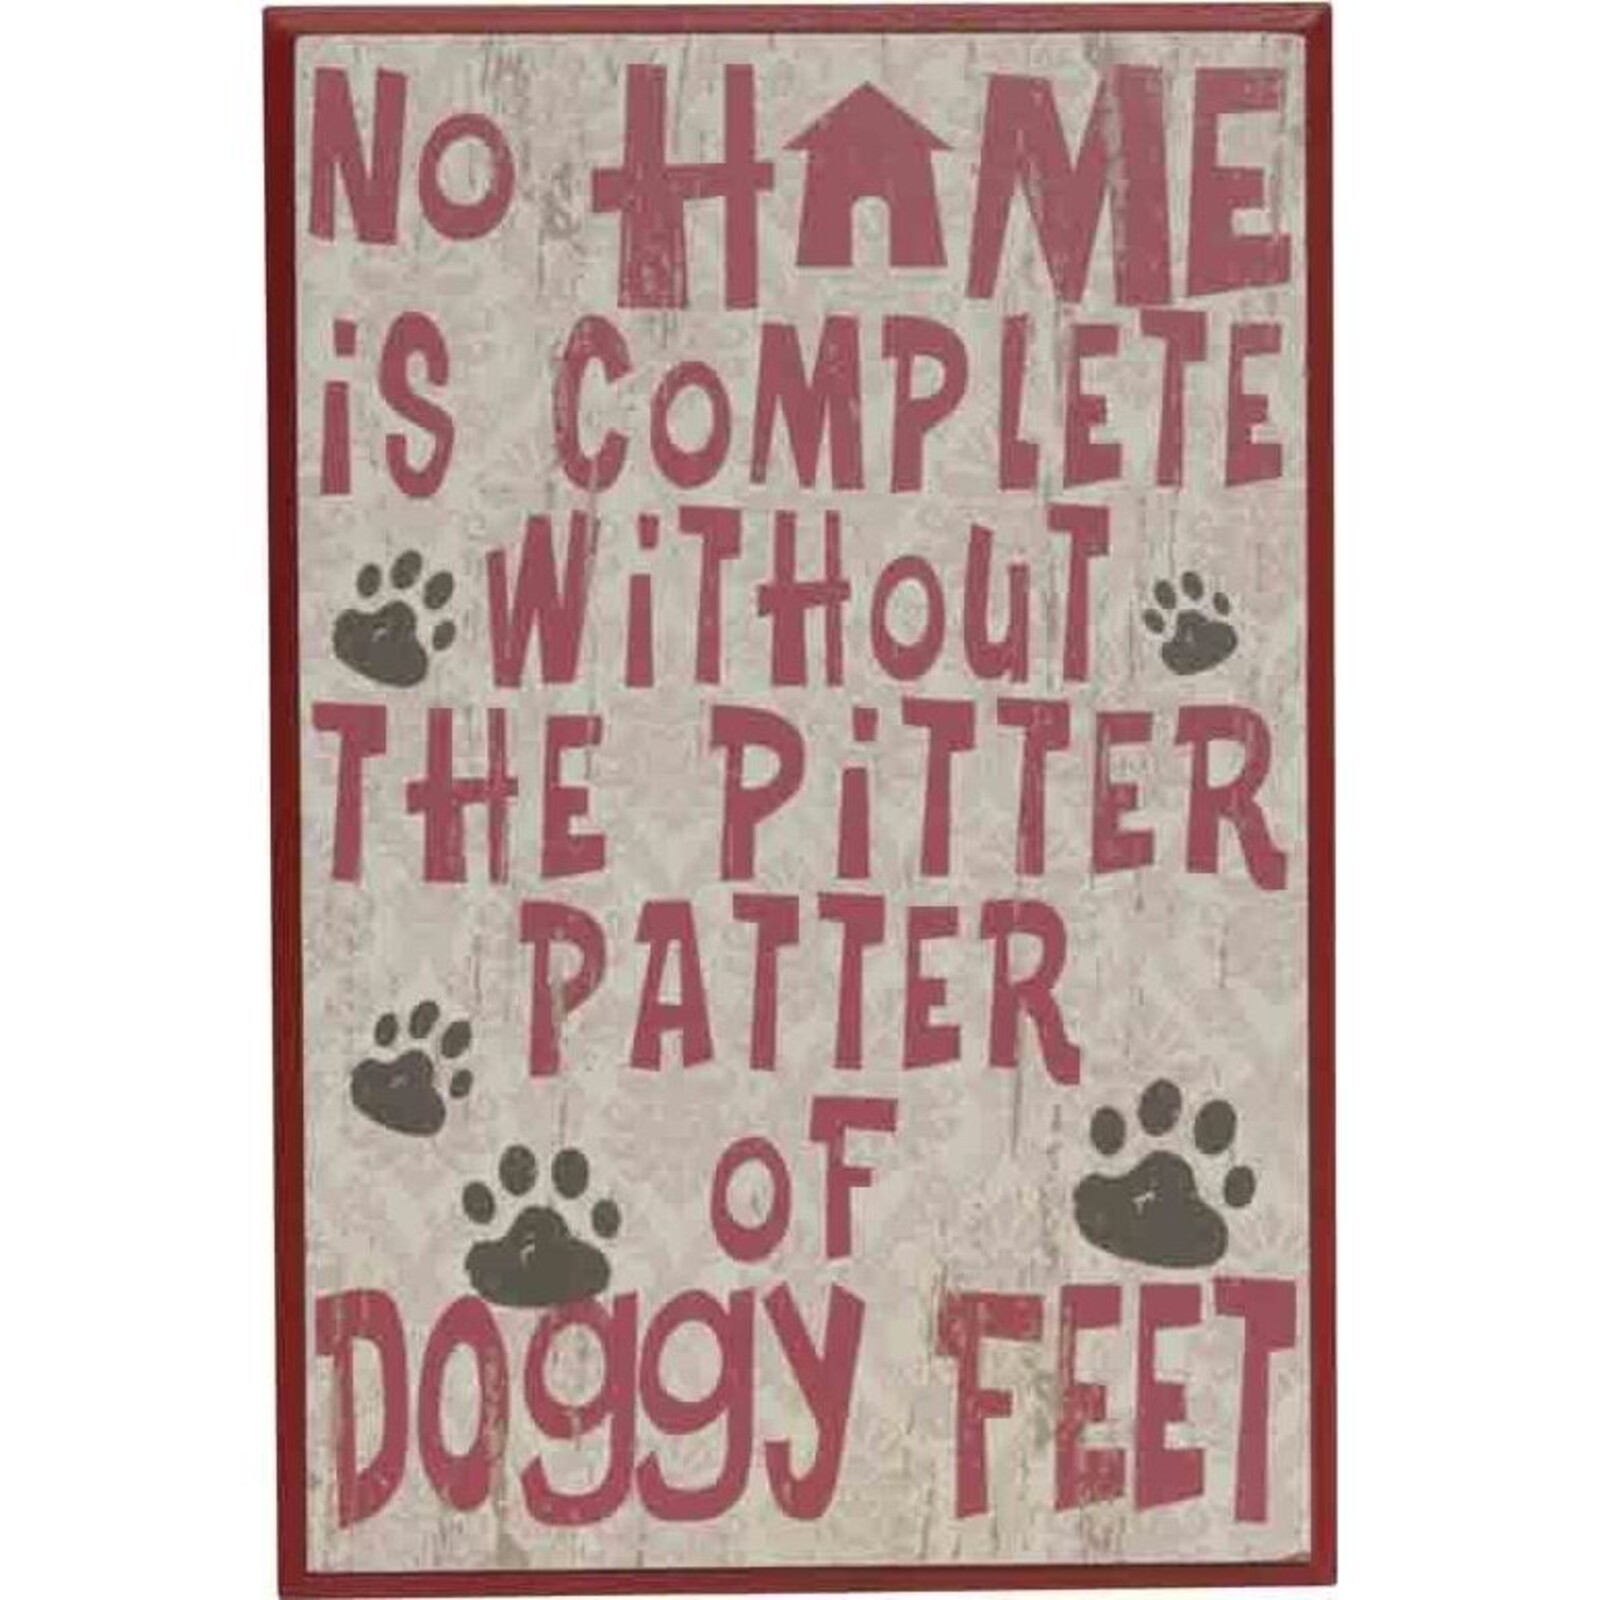 Sign - Doggy Feet